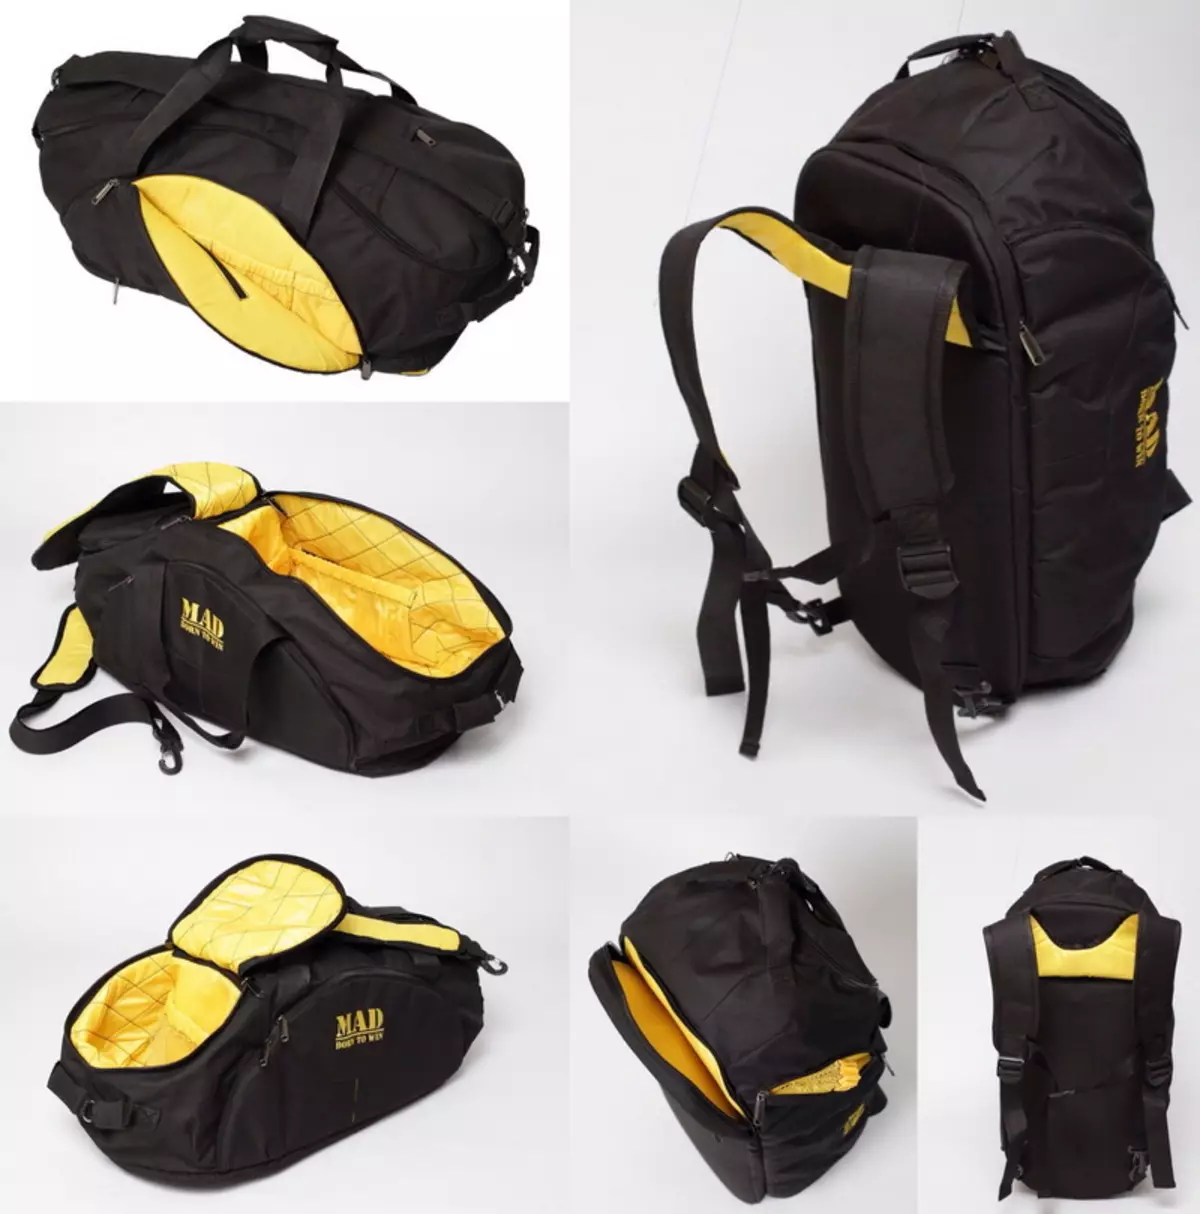 Transformers Backpacks: Kvinders læder rygsæk tasker med to håndtag og øko-træ, Burgund og sort, Urban og Road, andre modeller 2589_19